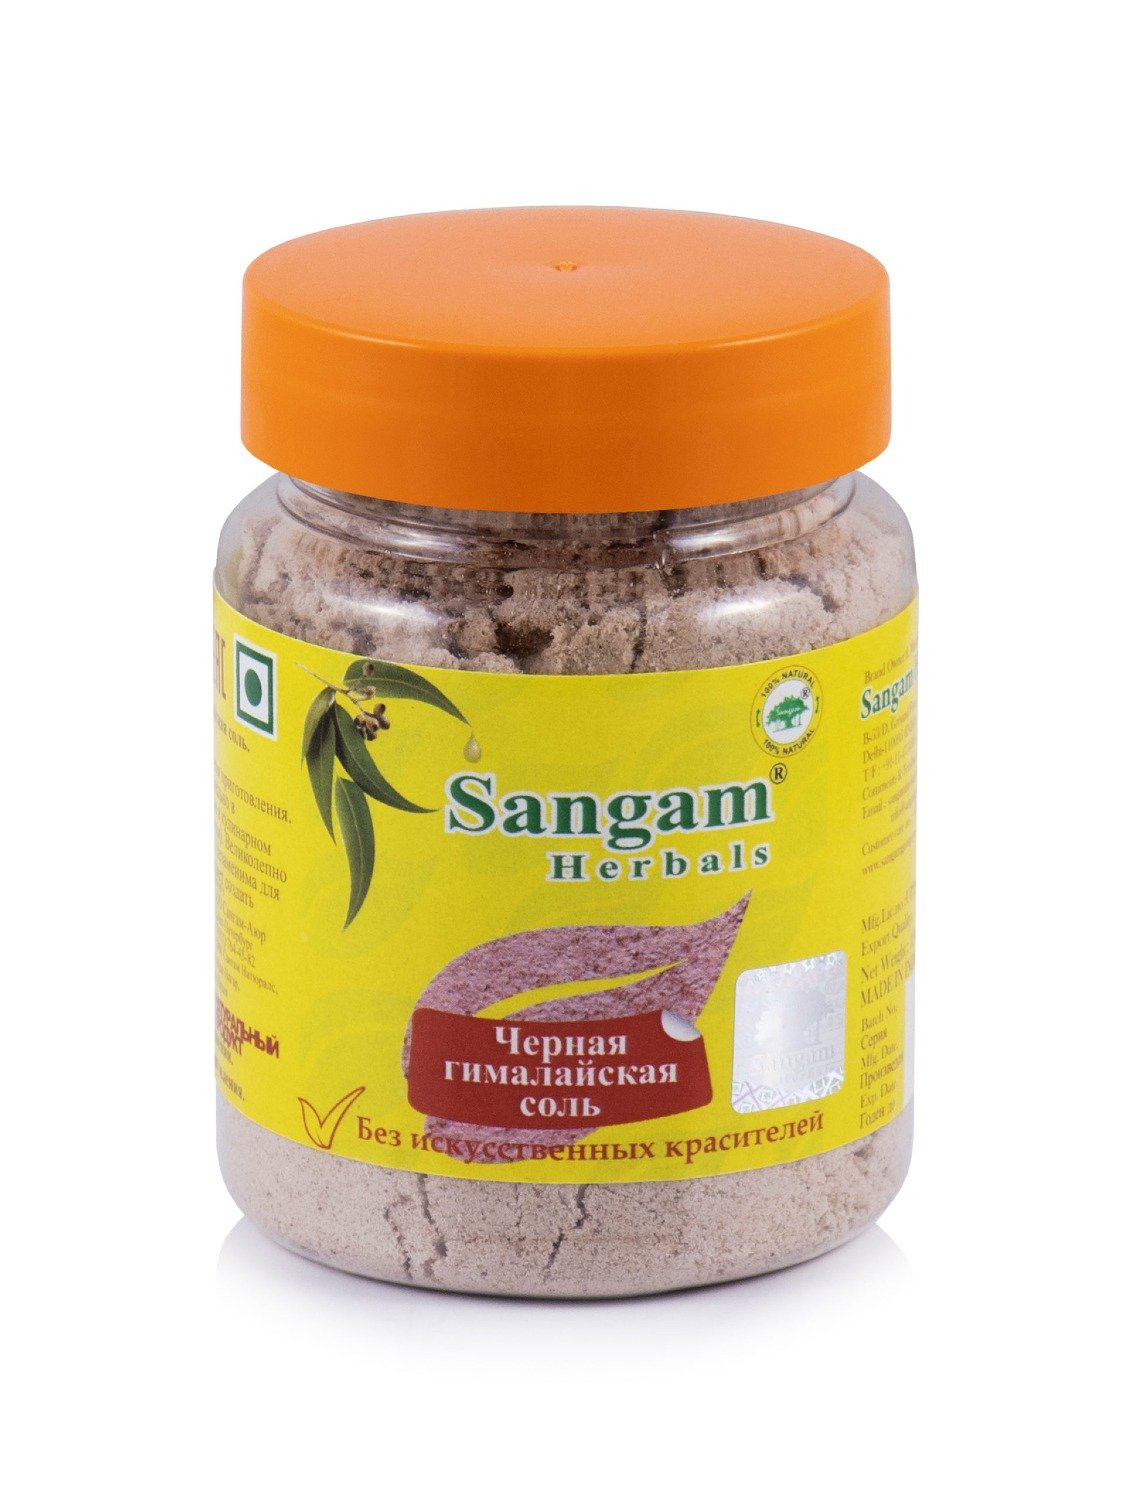 Купить Черная гималайская соль Sangam Herbals (120 г) в интернет-магазине #store#